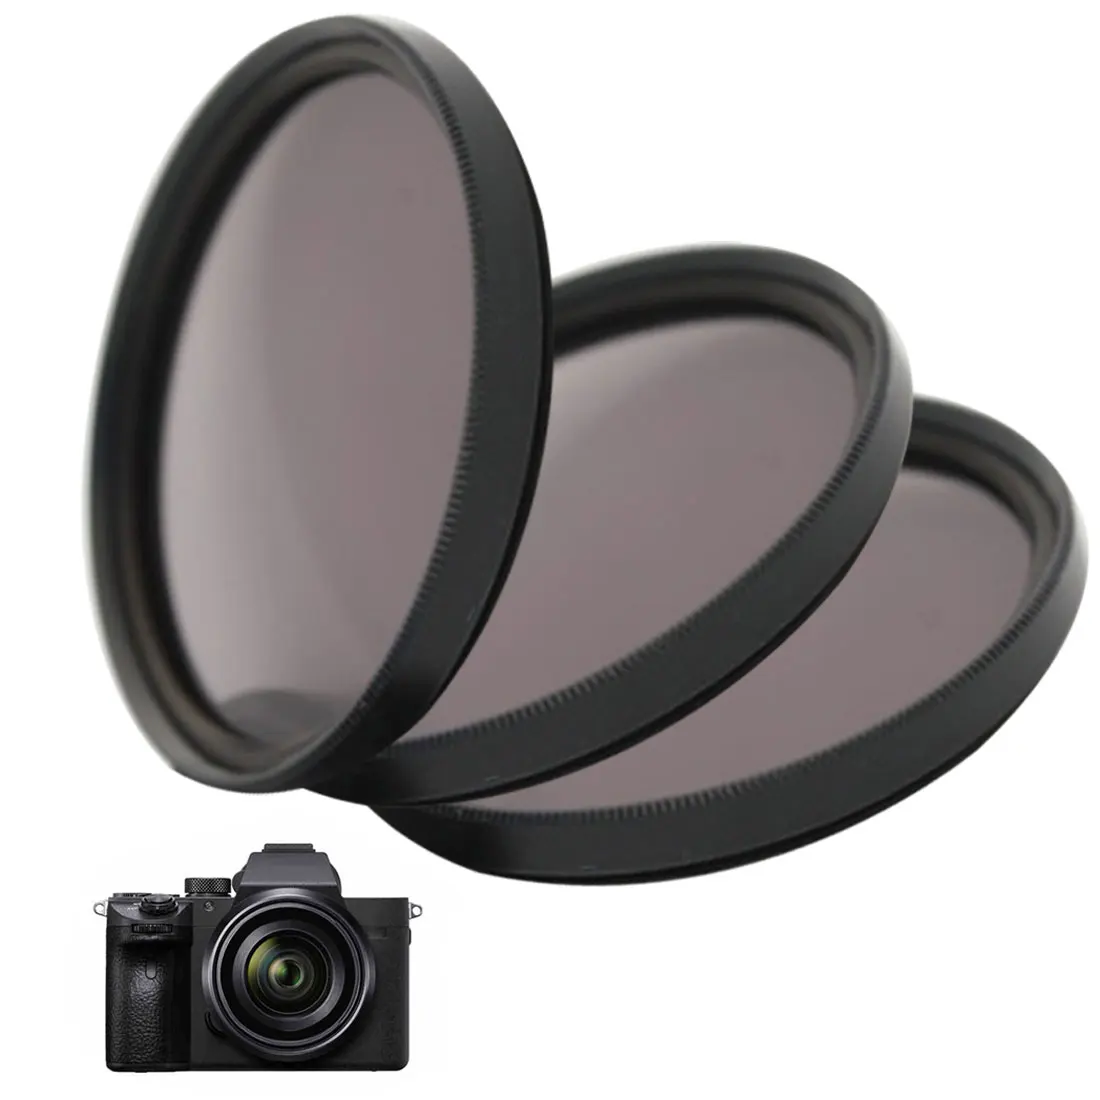 

KnightX ND FLD UV MC Star Lens Color Filter 52mm 58 67 55 77 mm for Nikon Canon EOS 7D 5D 6D 50D 60D 600D d5200 d3300 d3200 T5i